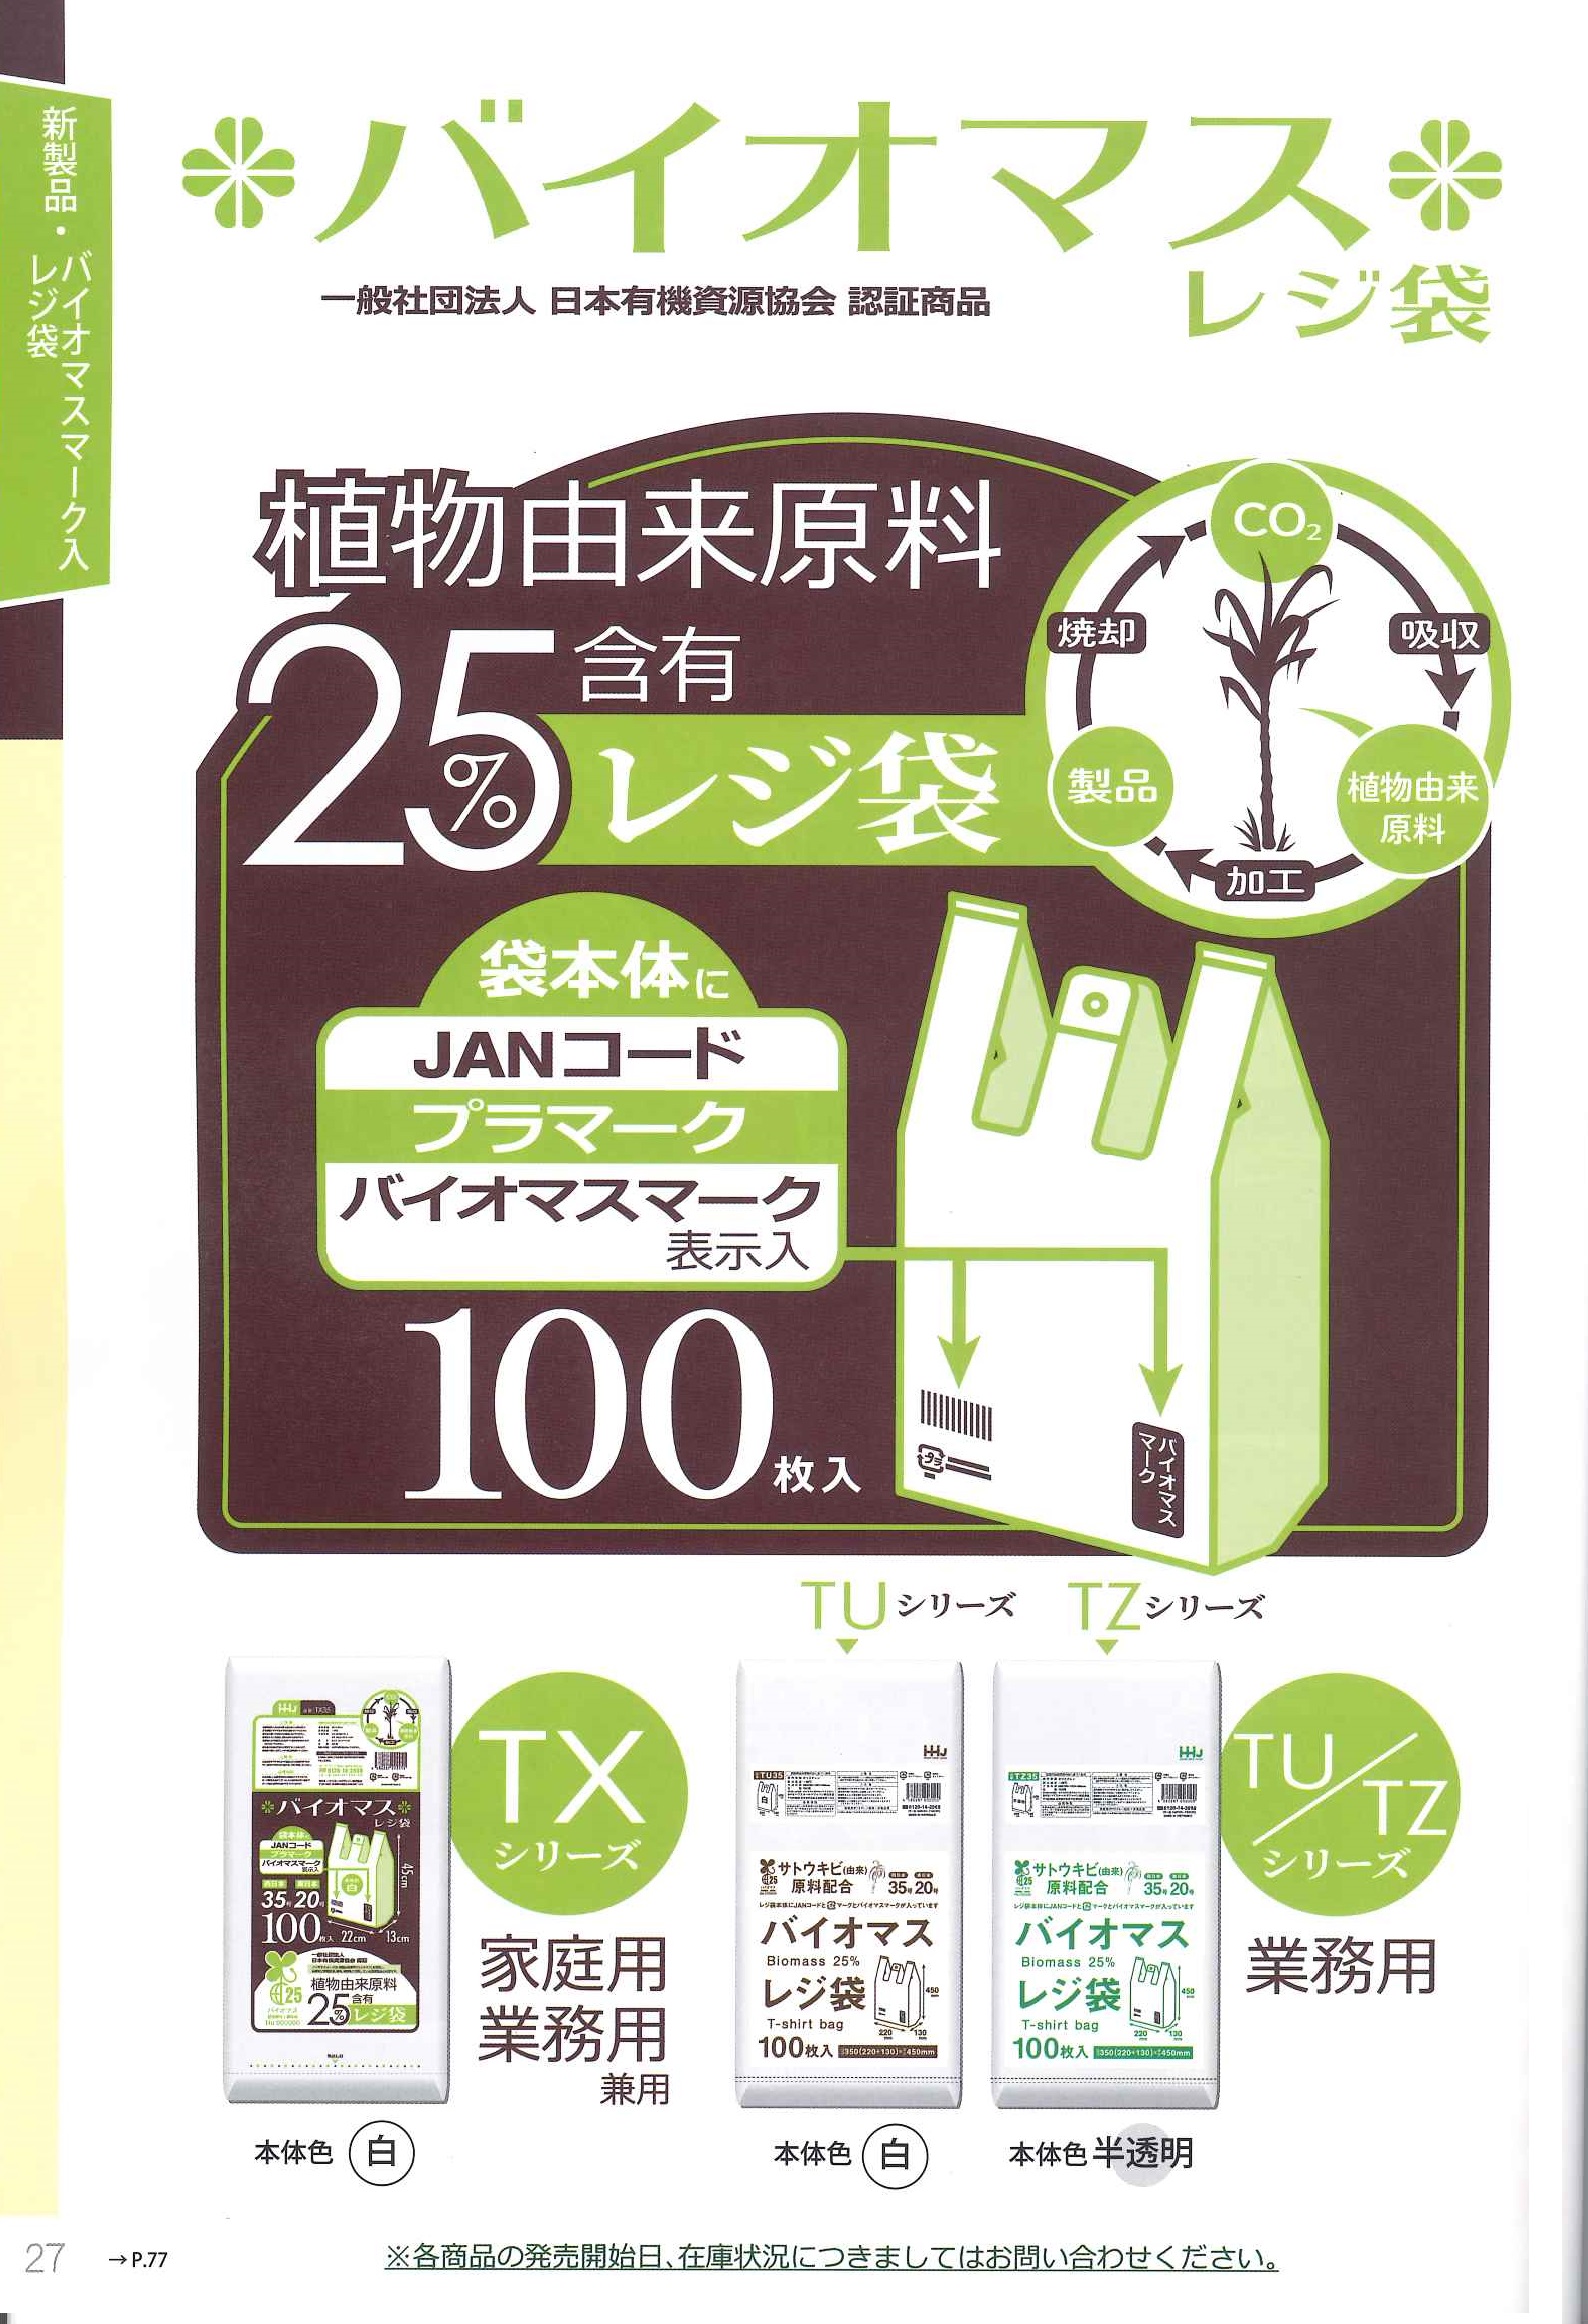 116円 安全Shopping レジ袋 バイオマス 半透明 プラマーク入 JANコード入 100枚入 TZ40